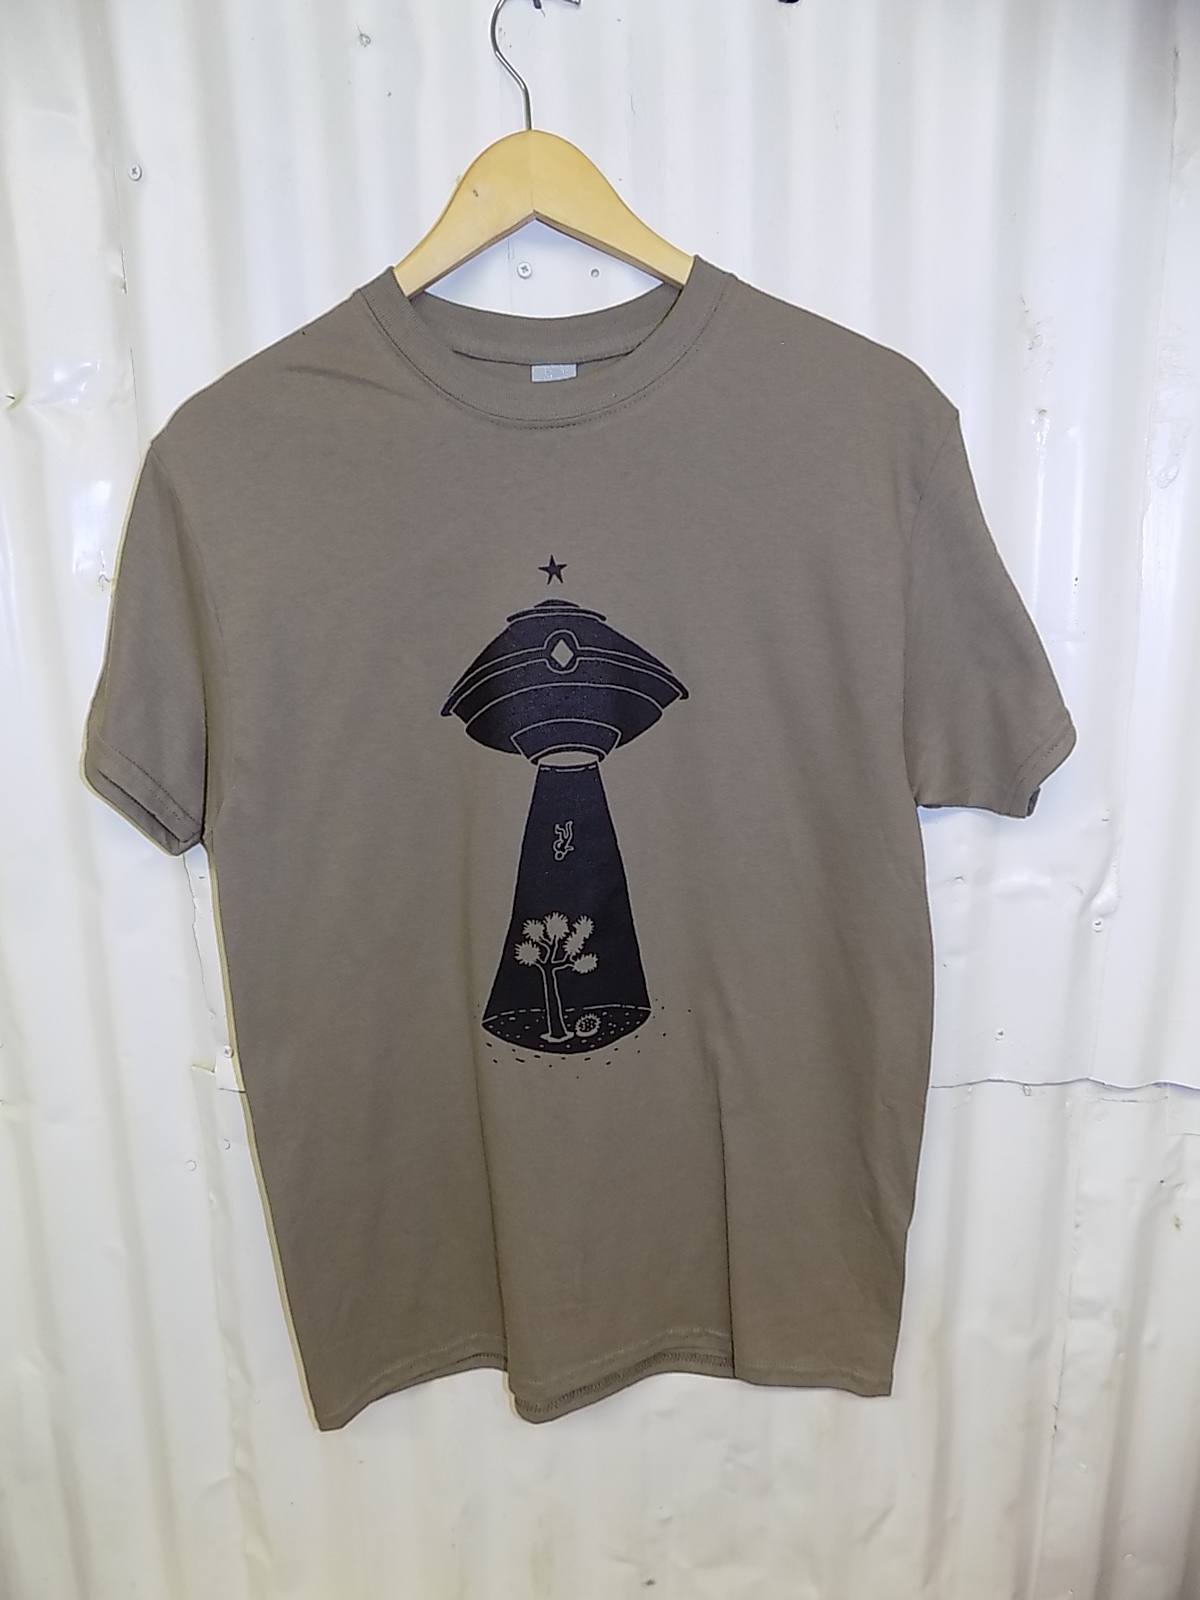 “Alien Abduction 2” Front Black Image on Desert Savannah T-Shirt